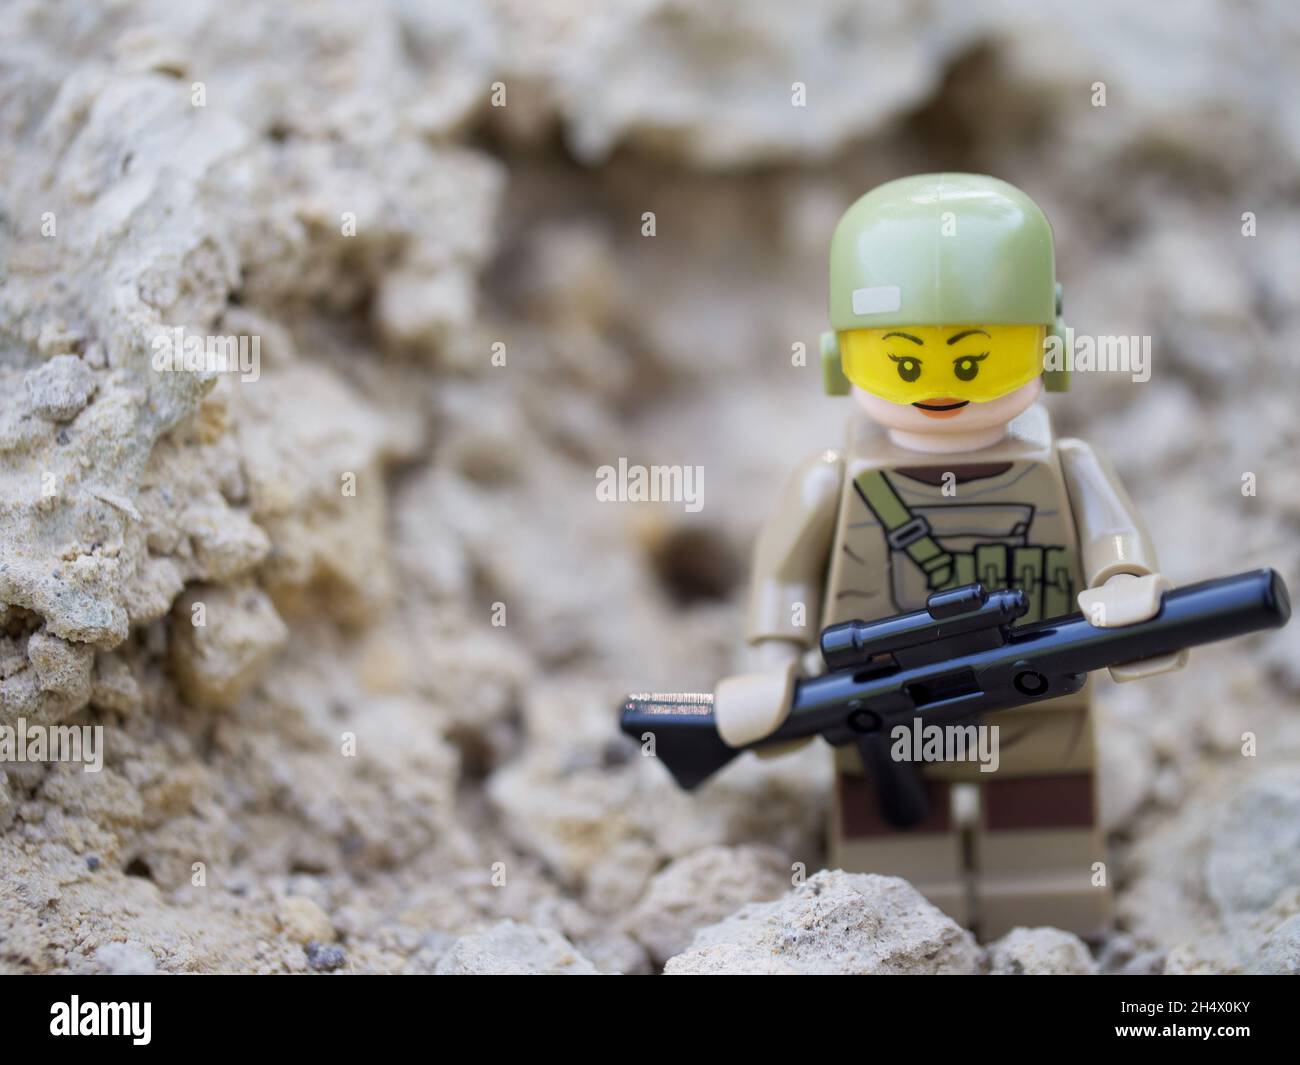 Chernihiv, Ucraina, 13 luglio 2021. Minifcifra di una ragazza in uniforme militare con una pistola, un primo piano. Editoriale illustrativo. Foto Stock